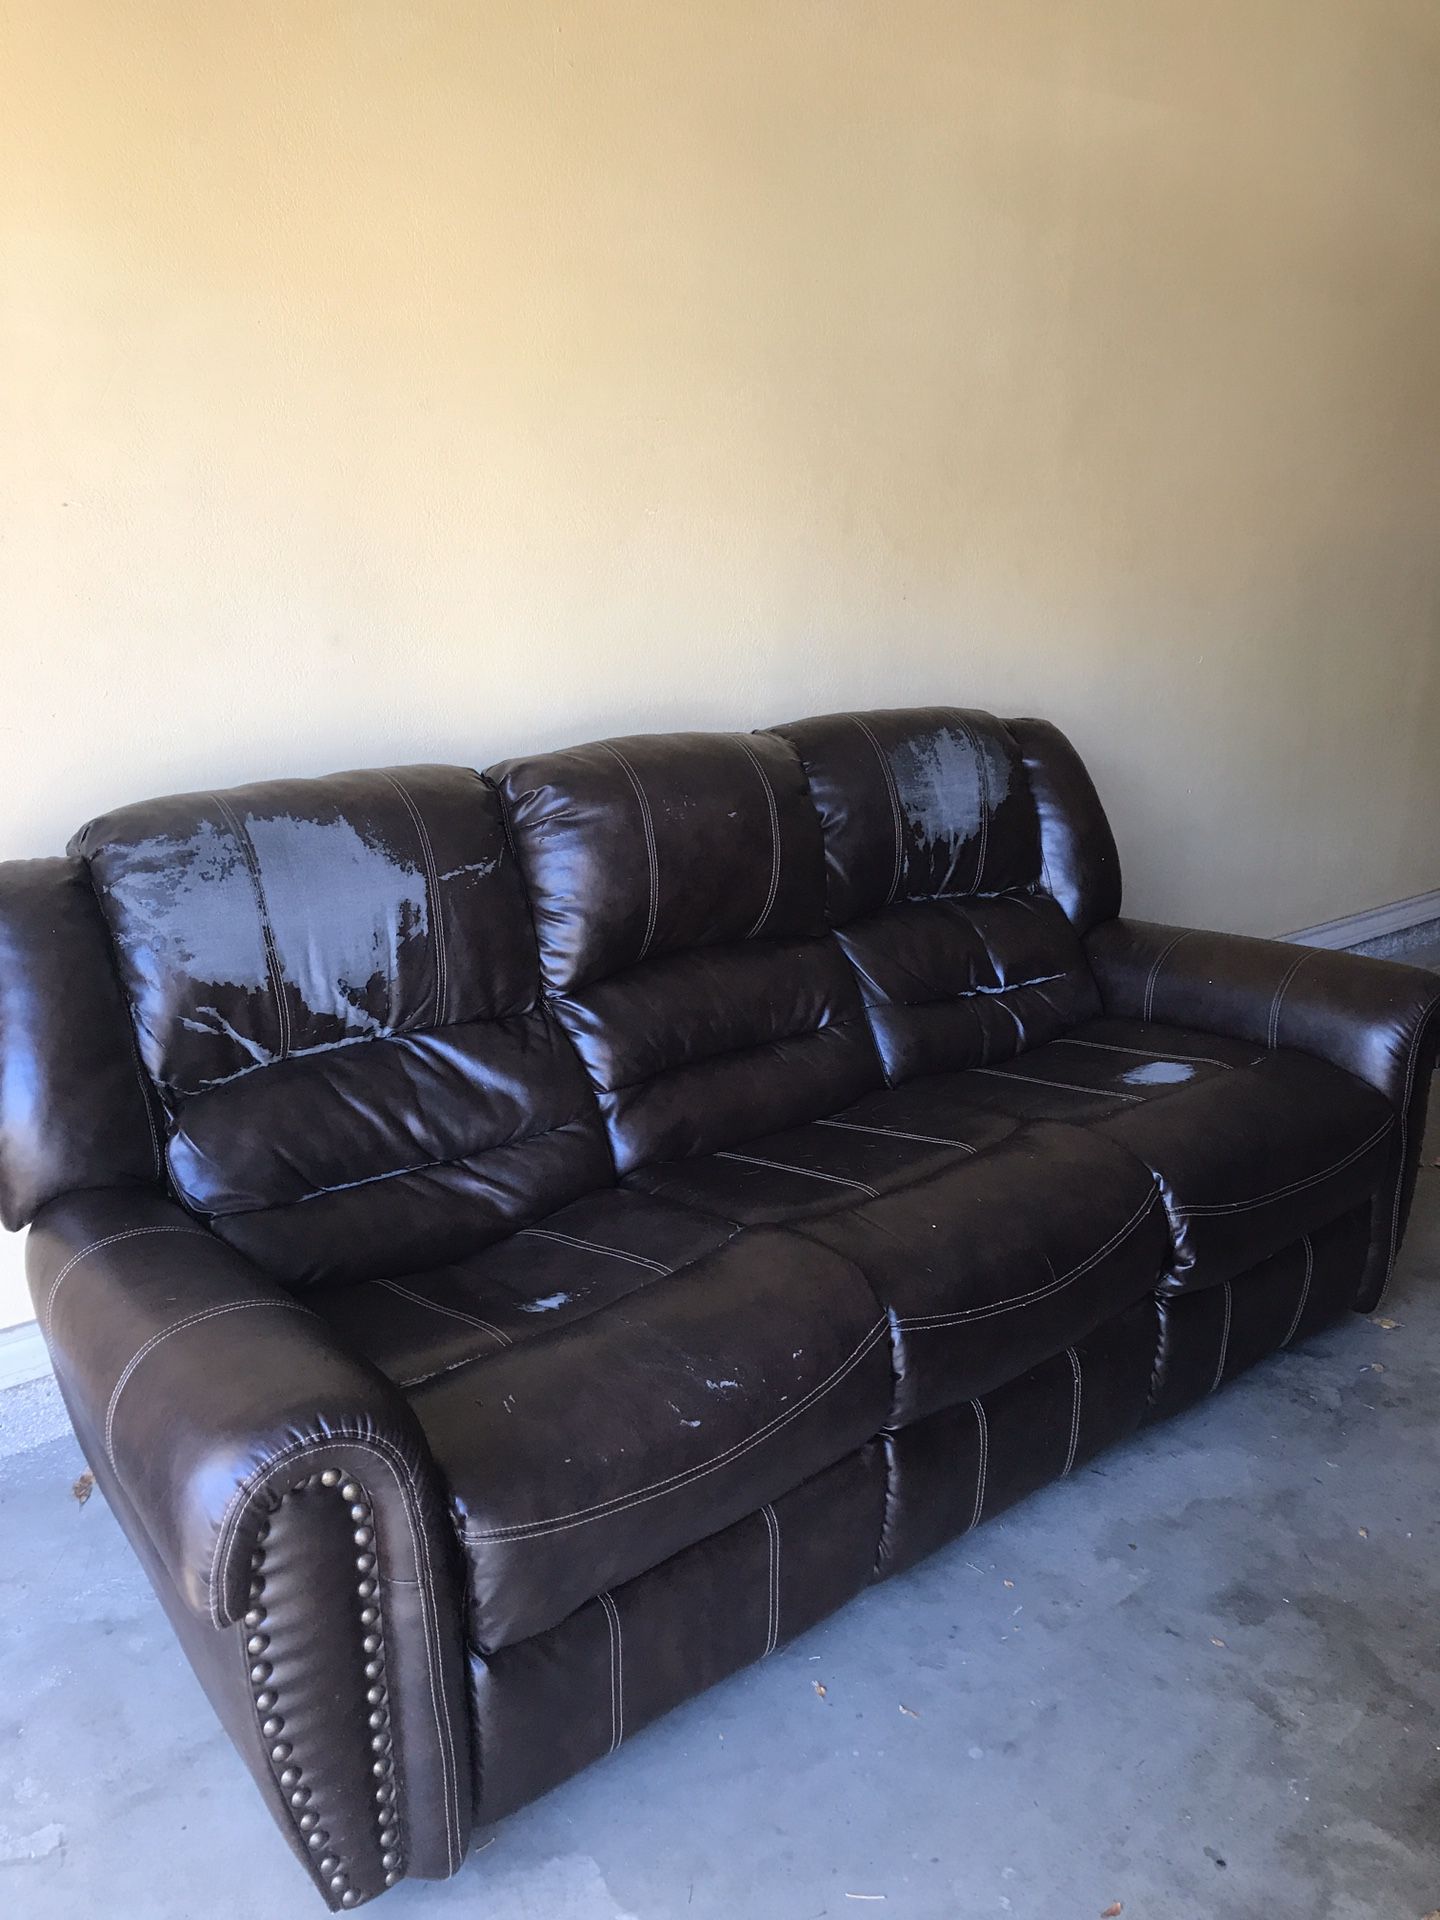 Free recliner sofa